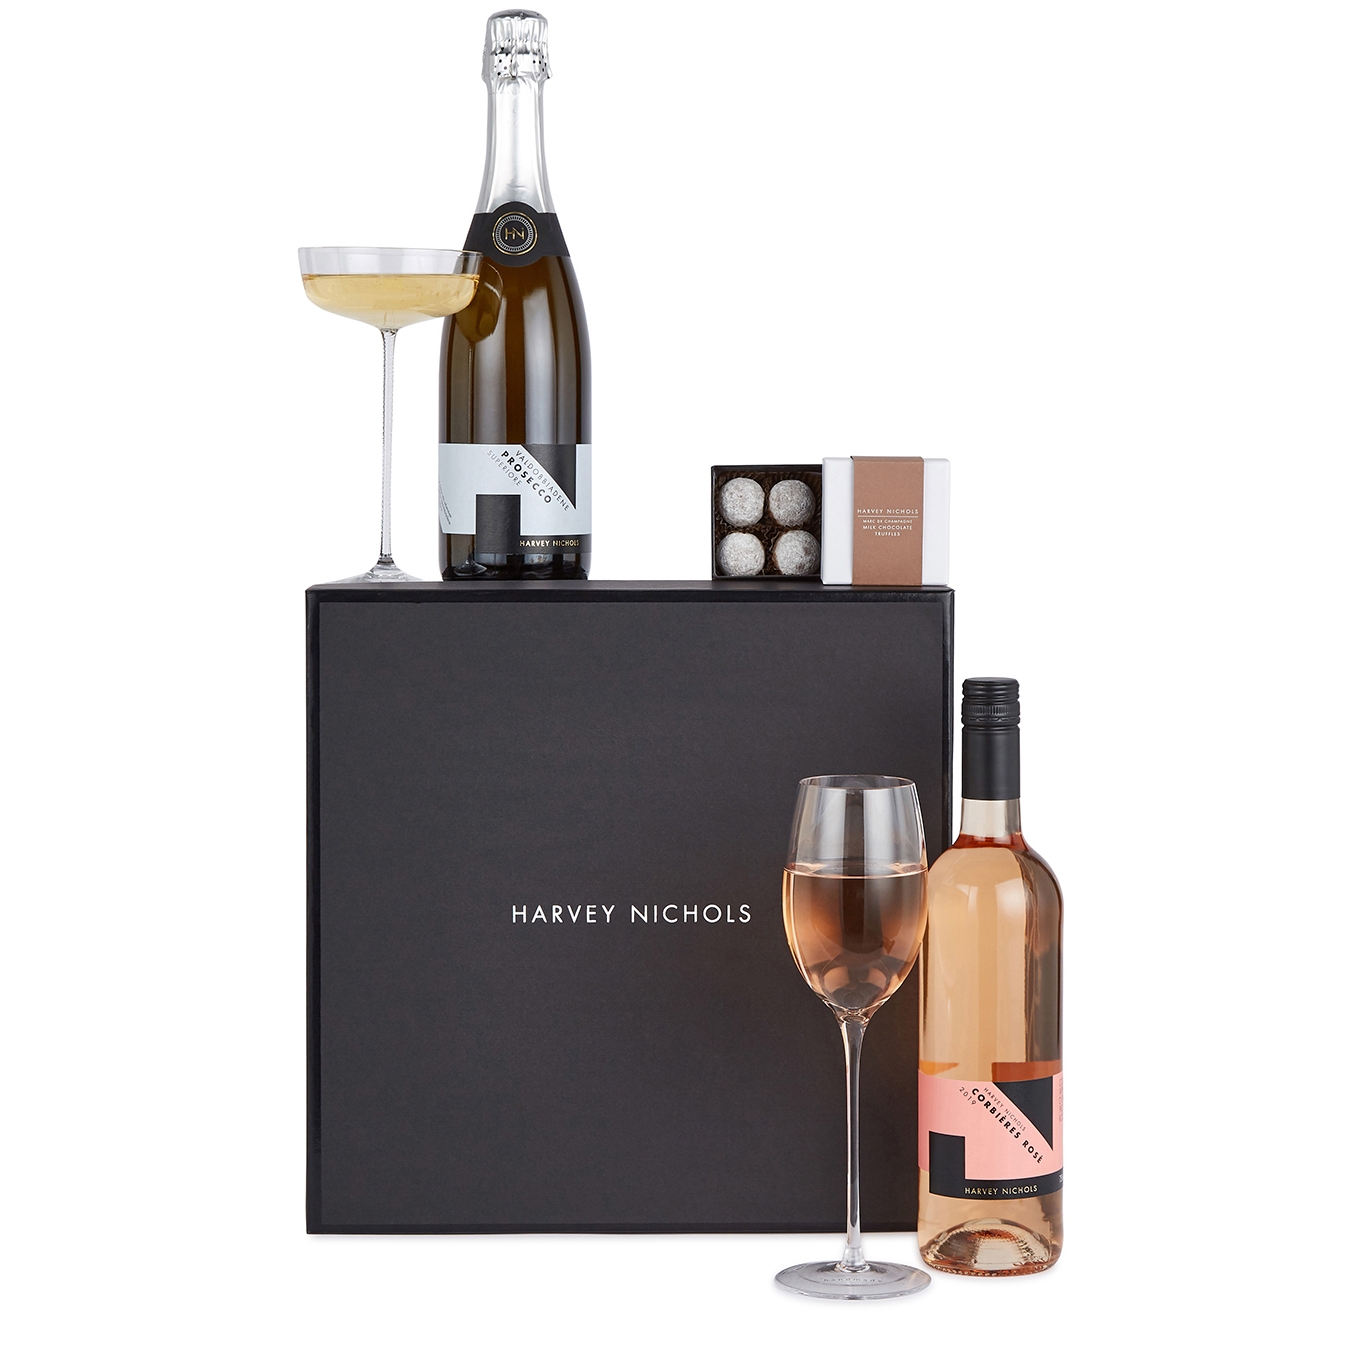 Harvey Nichols Send Some Love Gift Box, Wine Hamper, Prosecco & Rosé